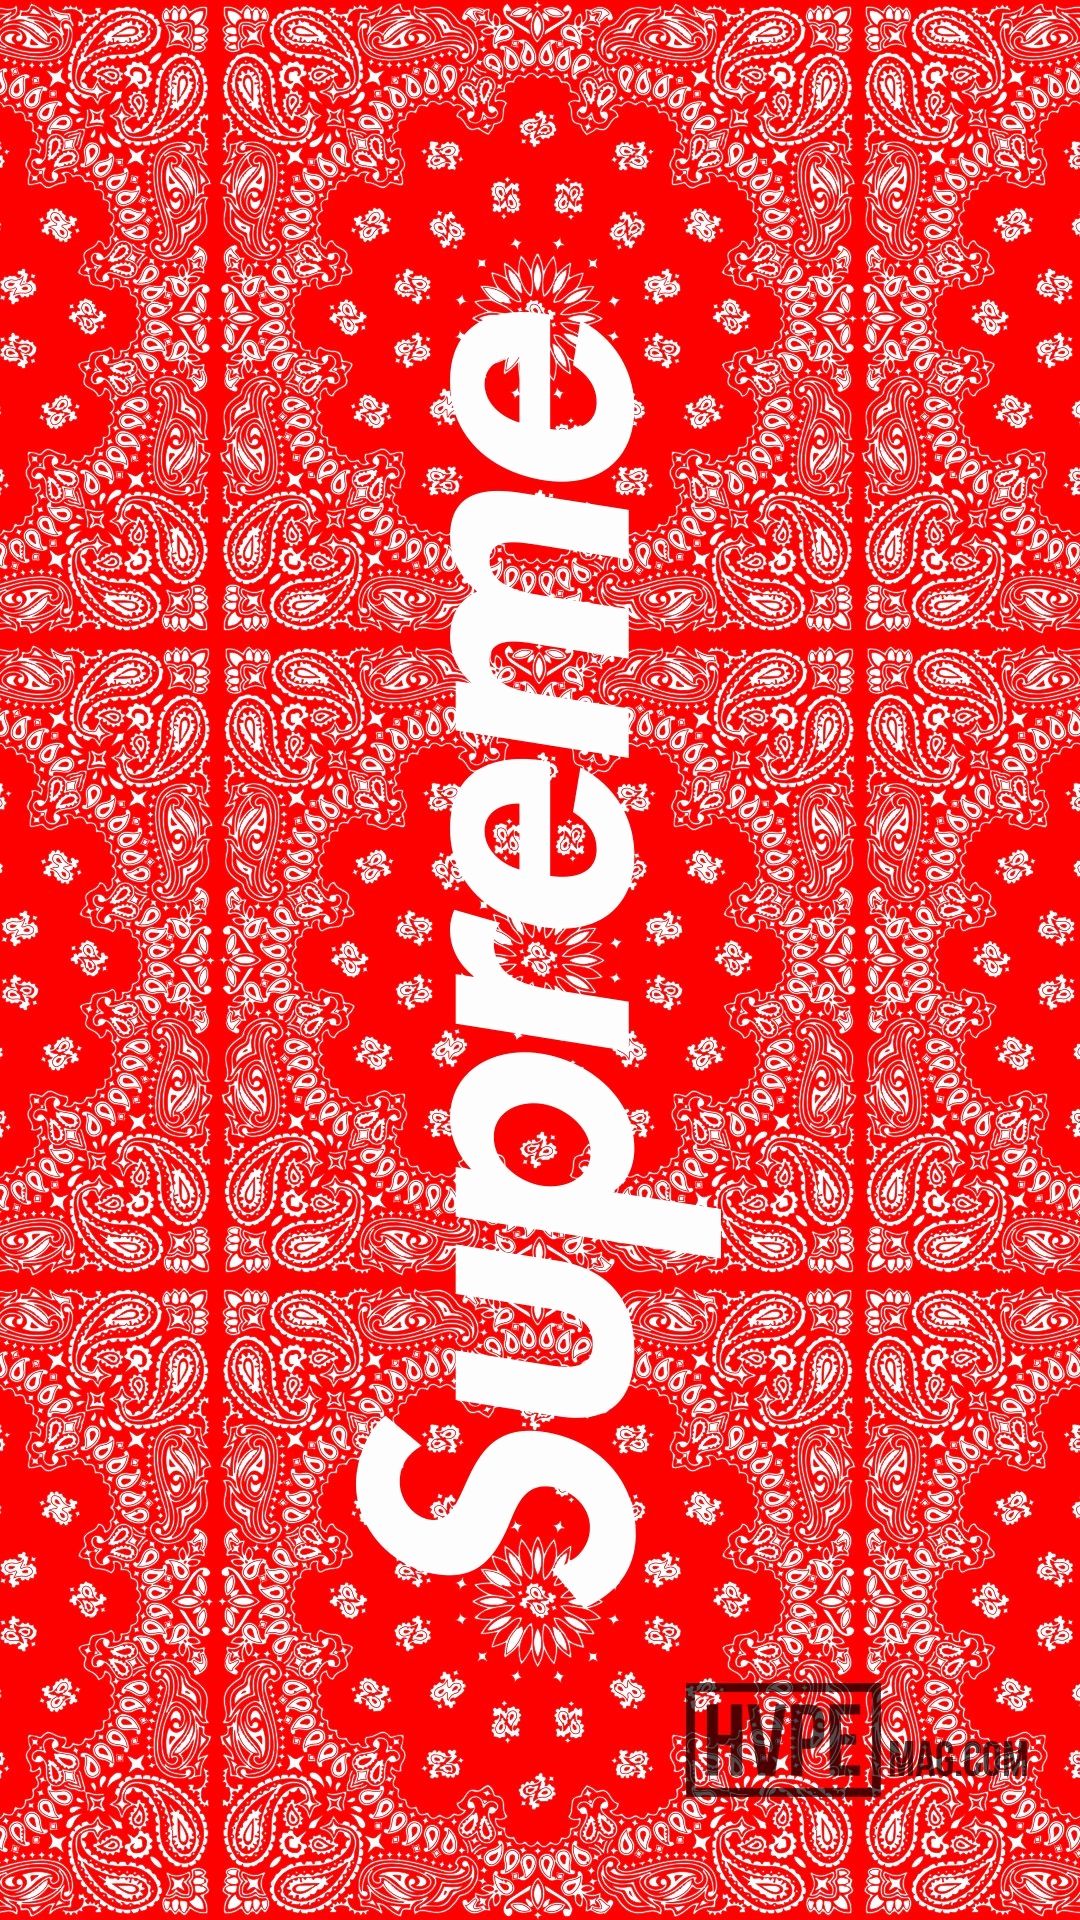 louis vuitton wallpaper,font,text,red,banner,pattern (#31421) - WallpaperUse